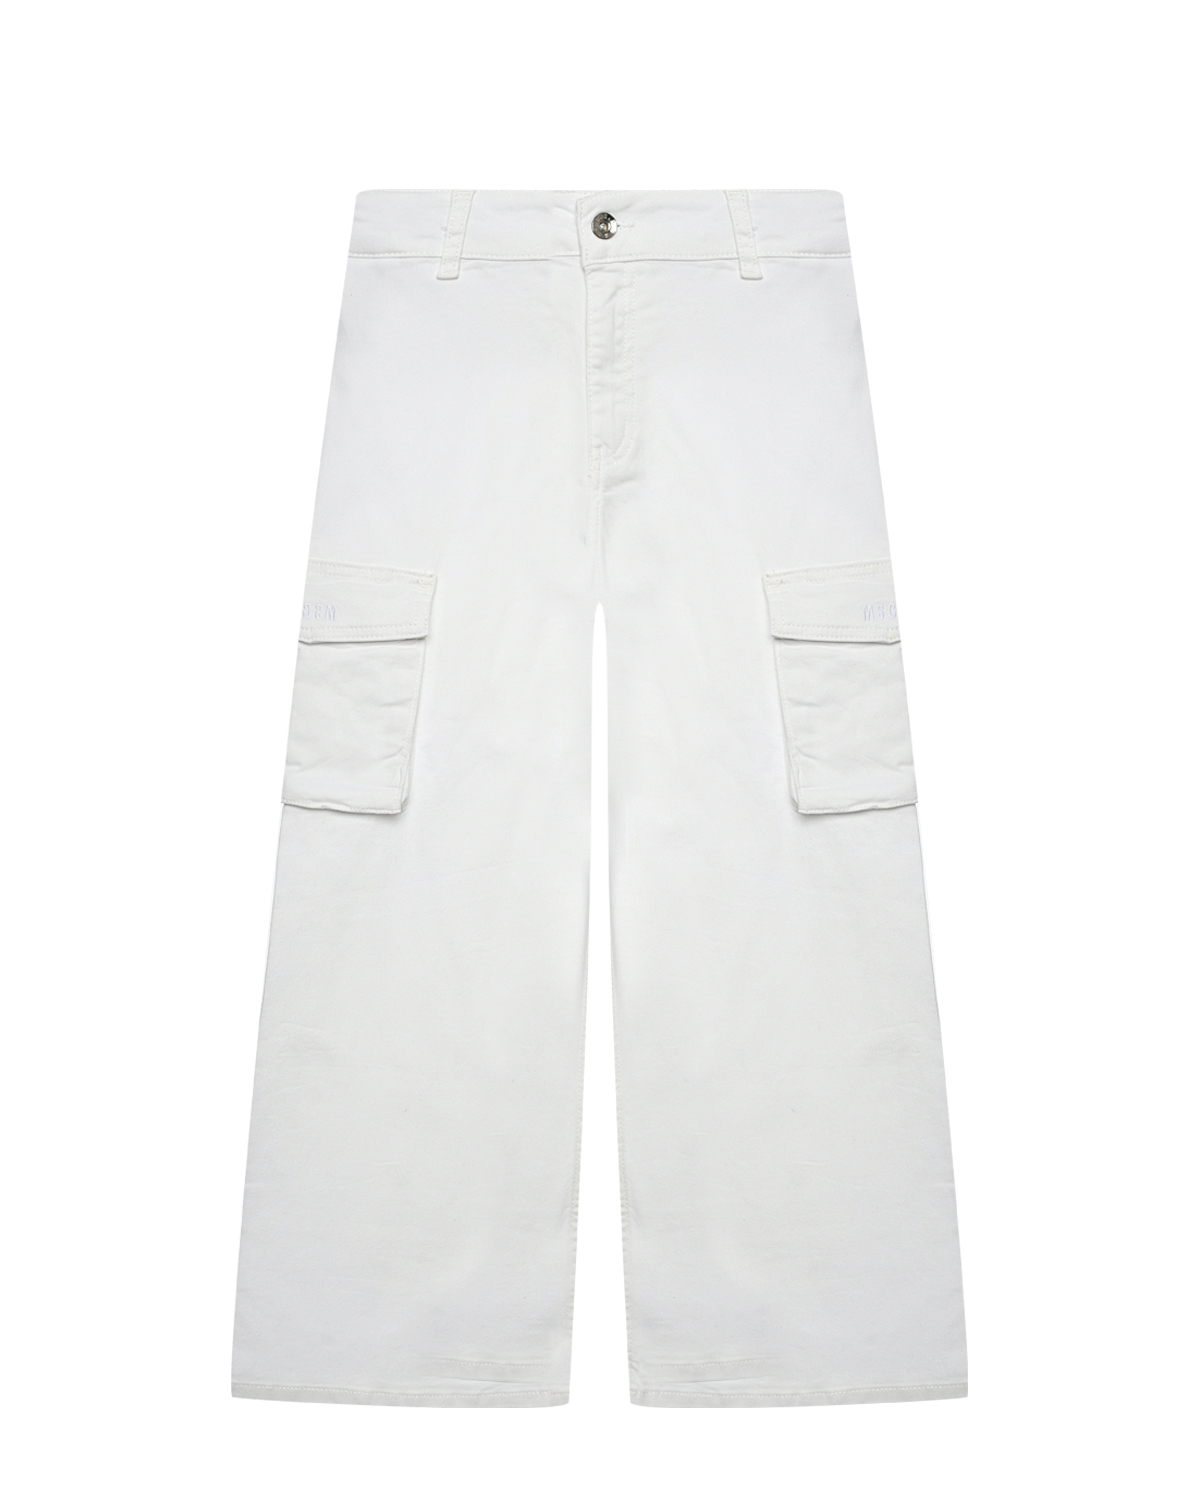 Брюки с карманами-карго, белые MSGM костюмные брюки с карманами карго